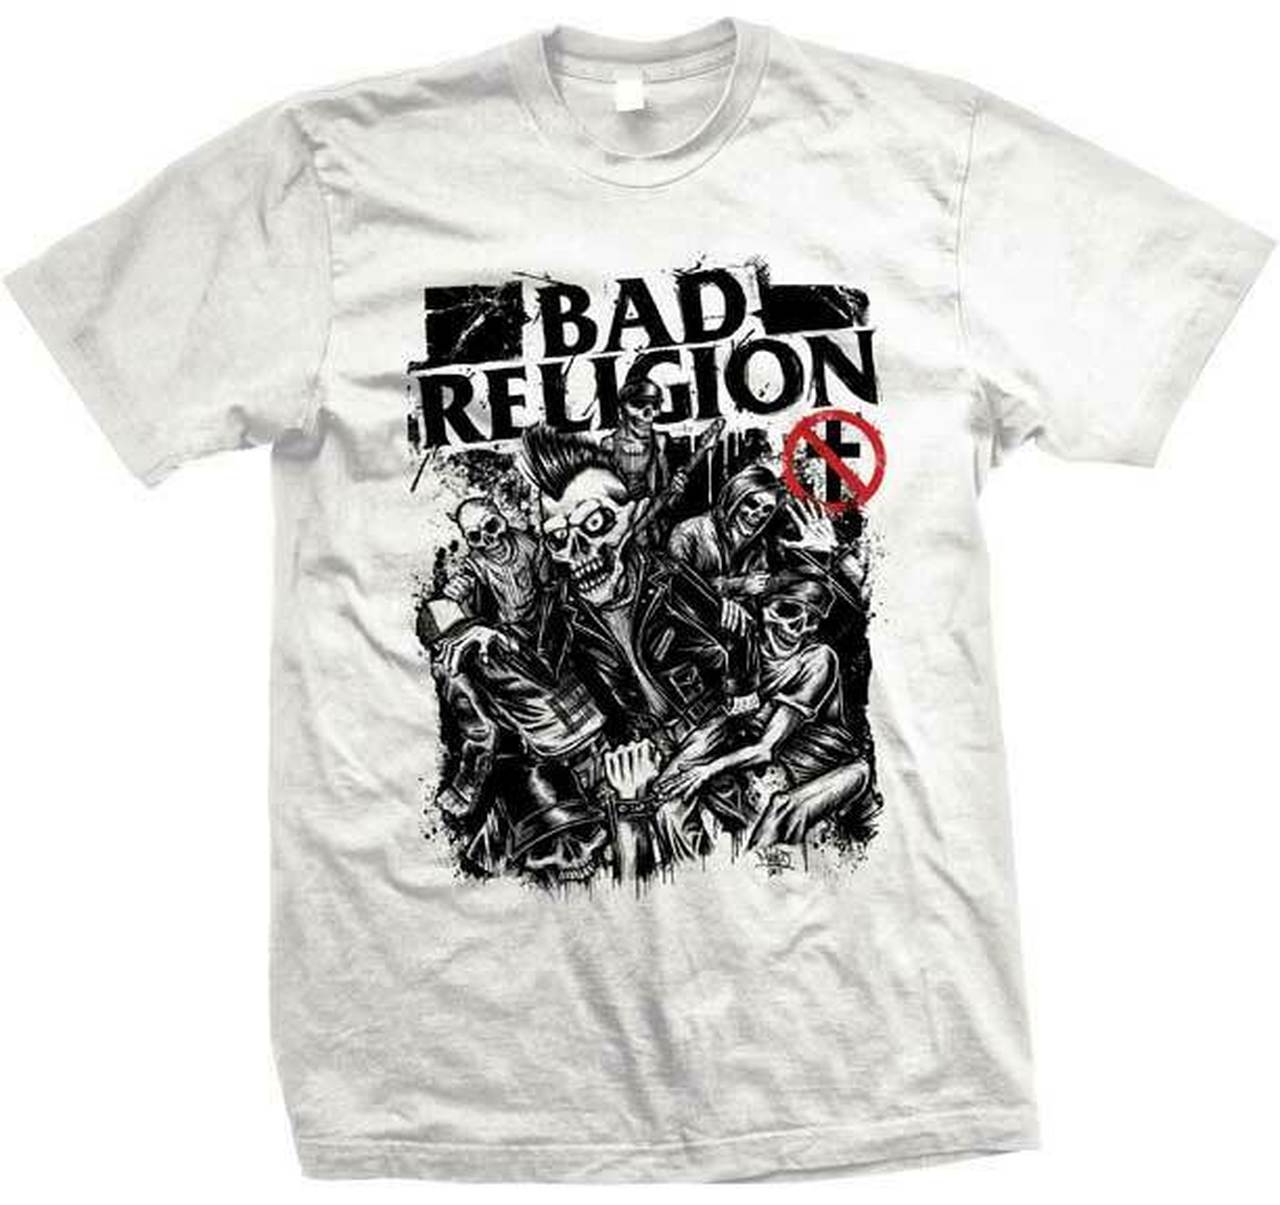 バンドTシャツ 通販 バッド レリジョン,Tシャツ,Bad Religion,メロコア ...